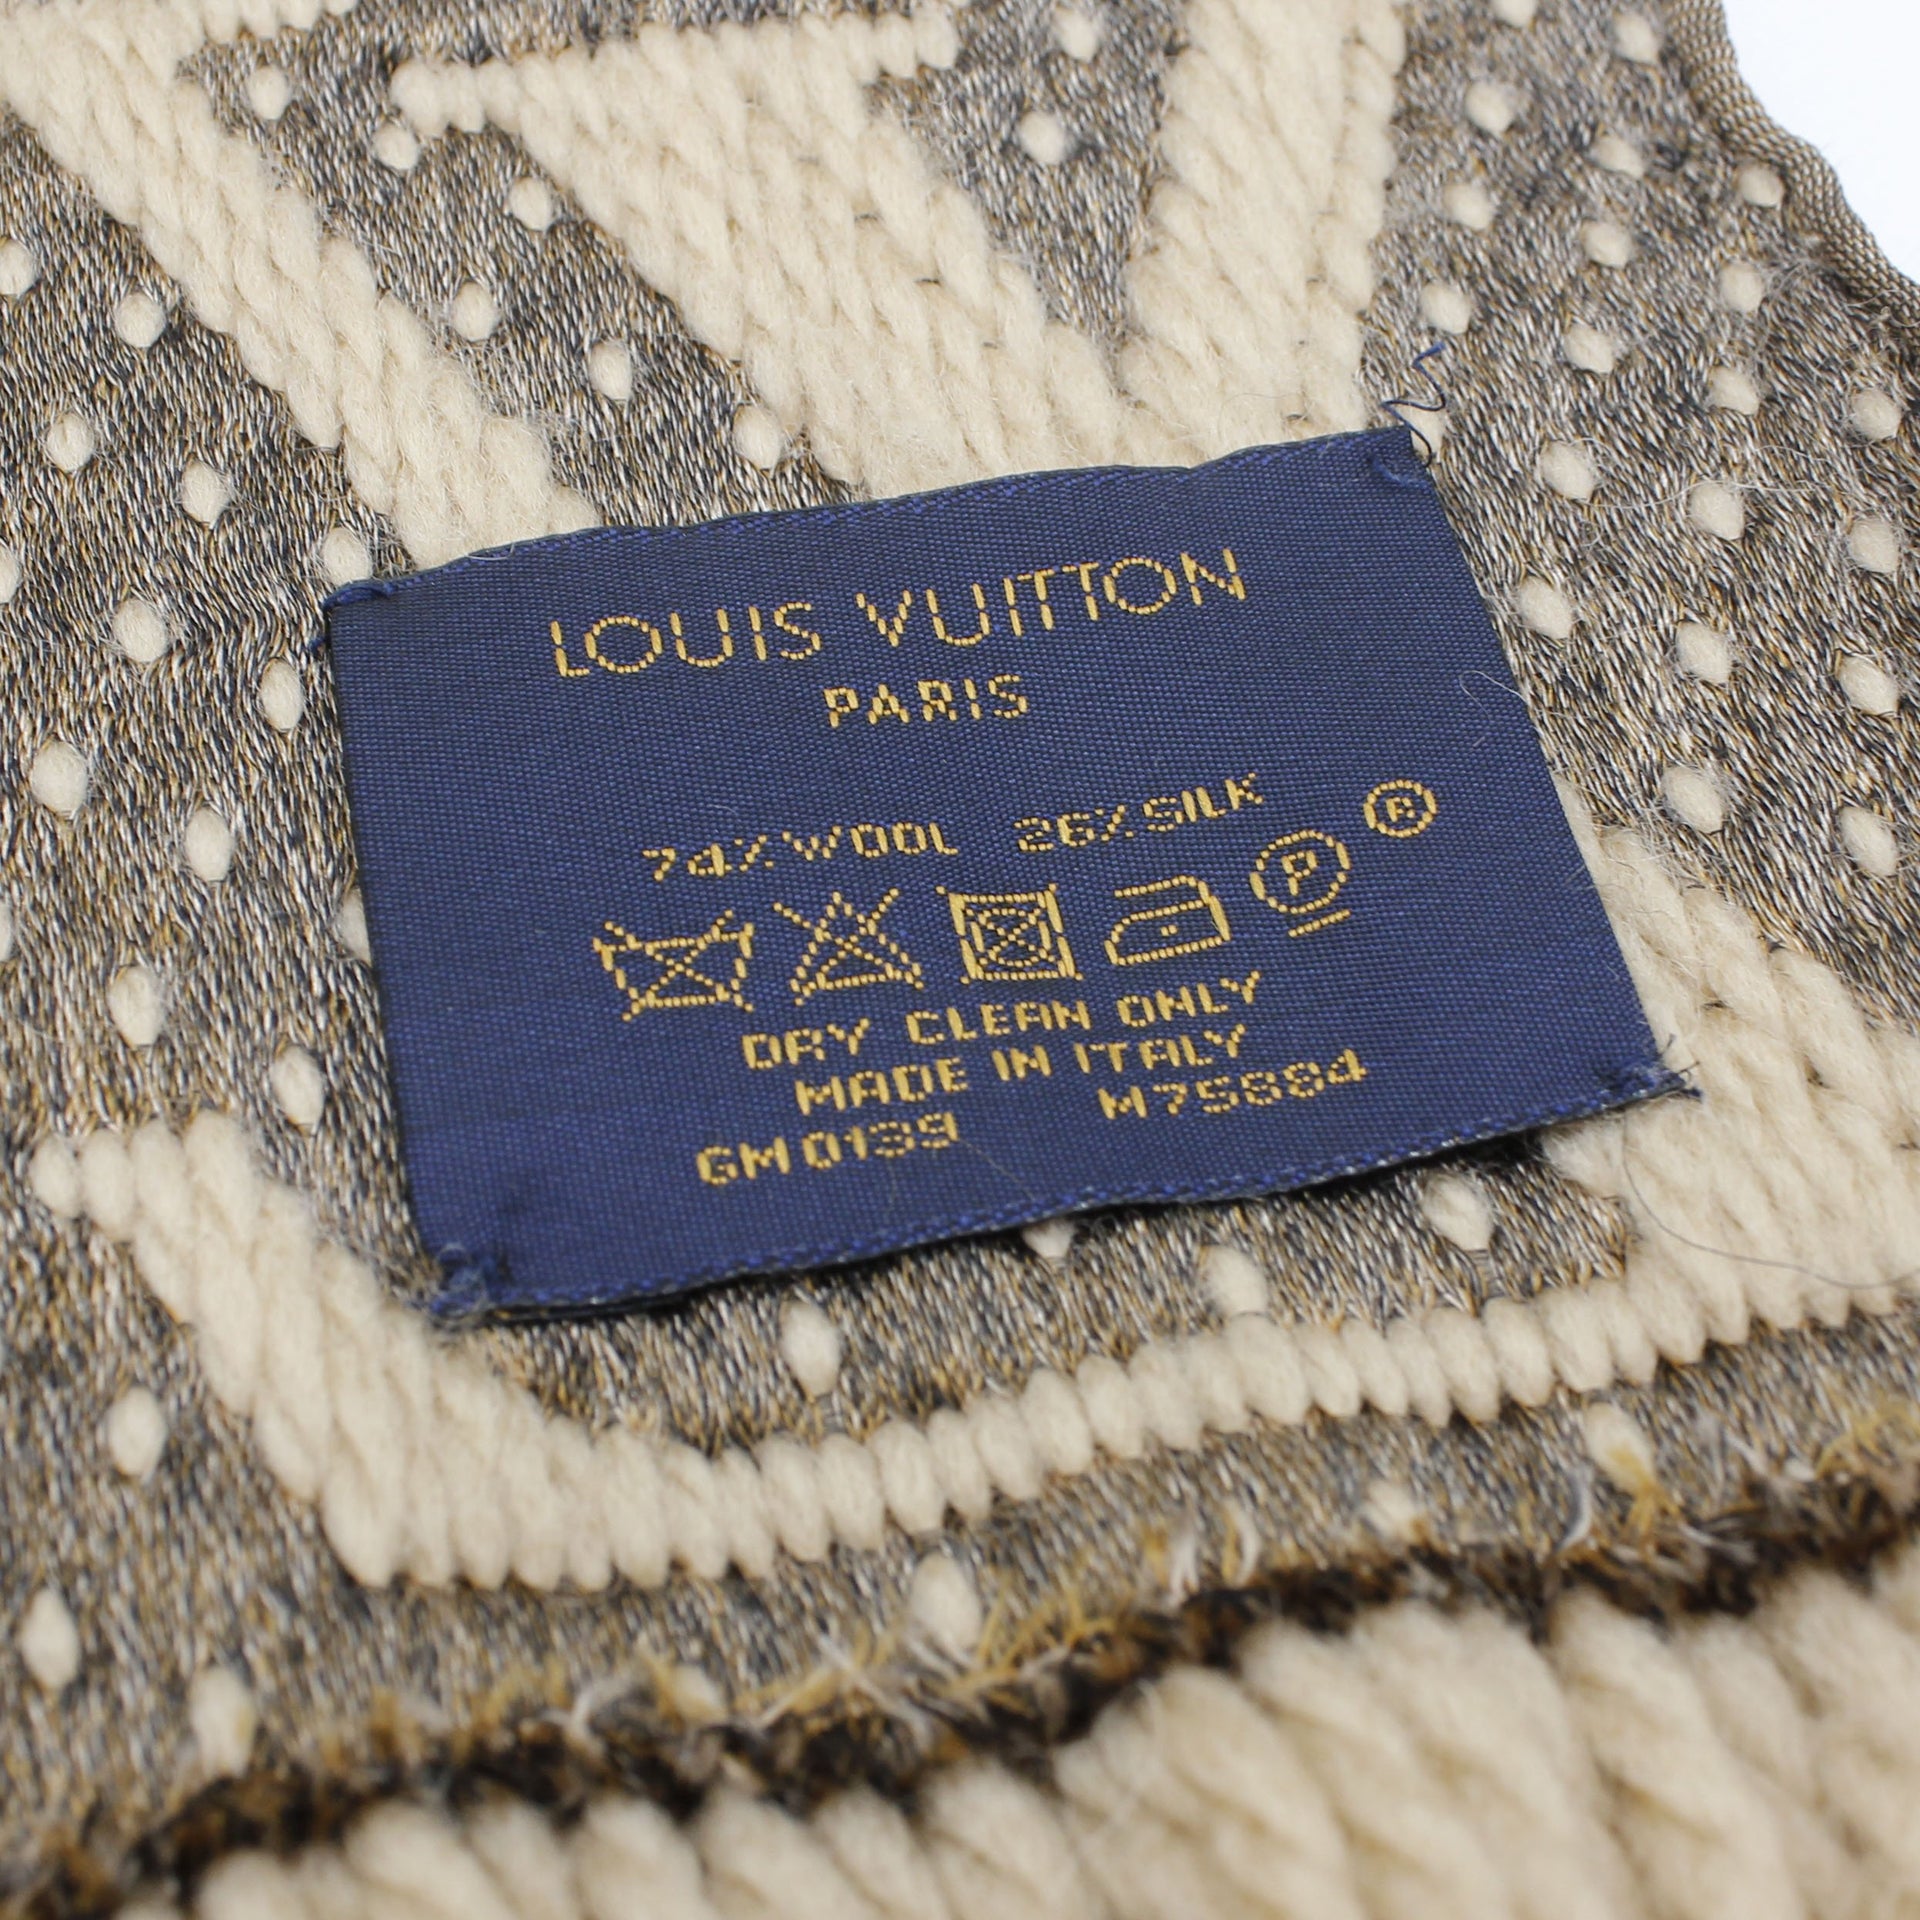 Louis Vuitton, Accessories, Nwt Louis Vuitton Logomania Jungle Print Scarf